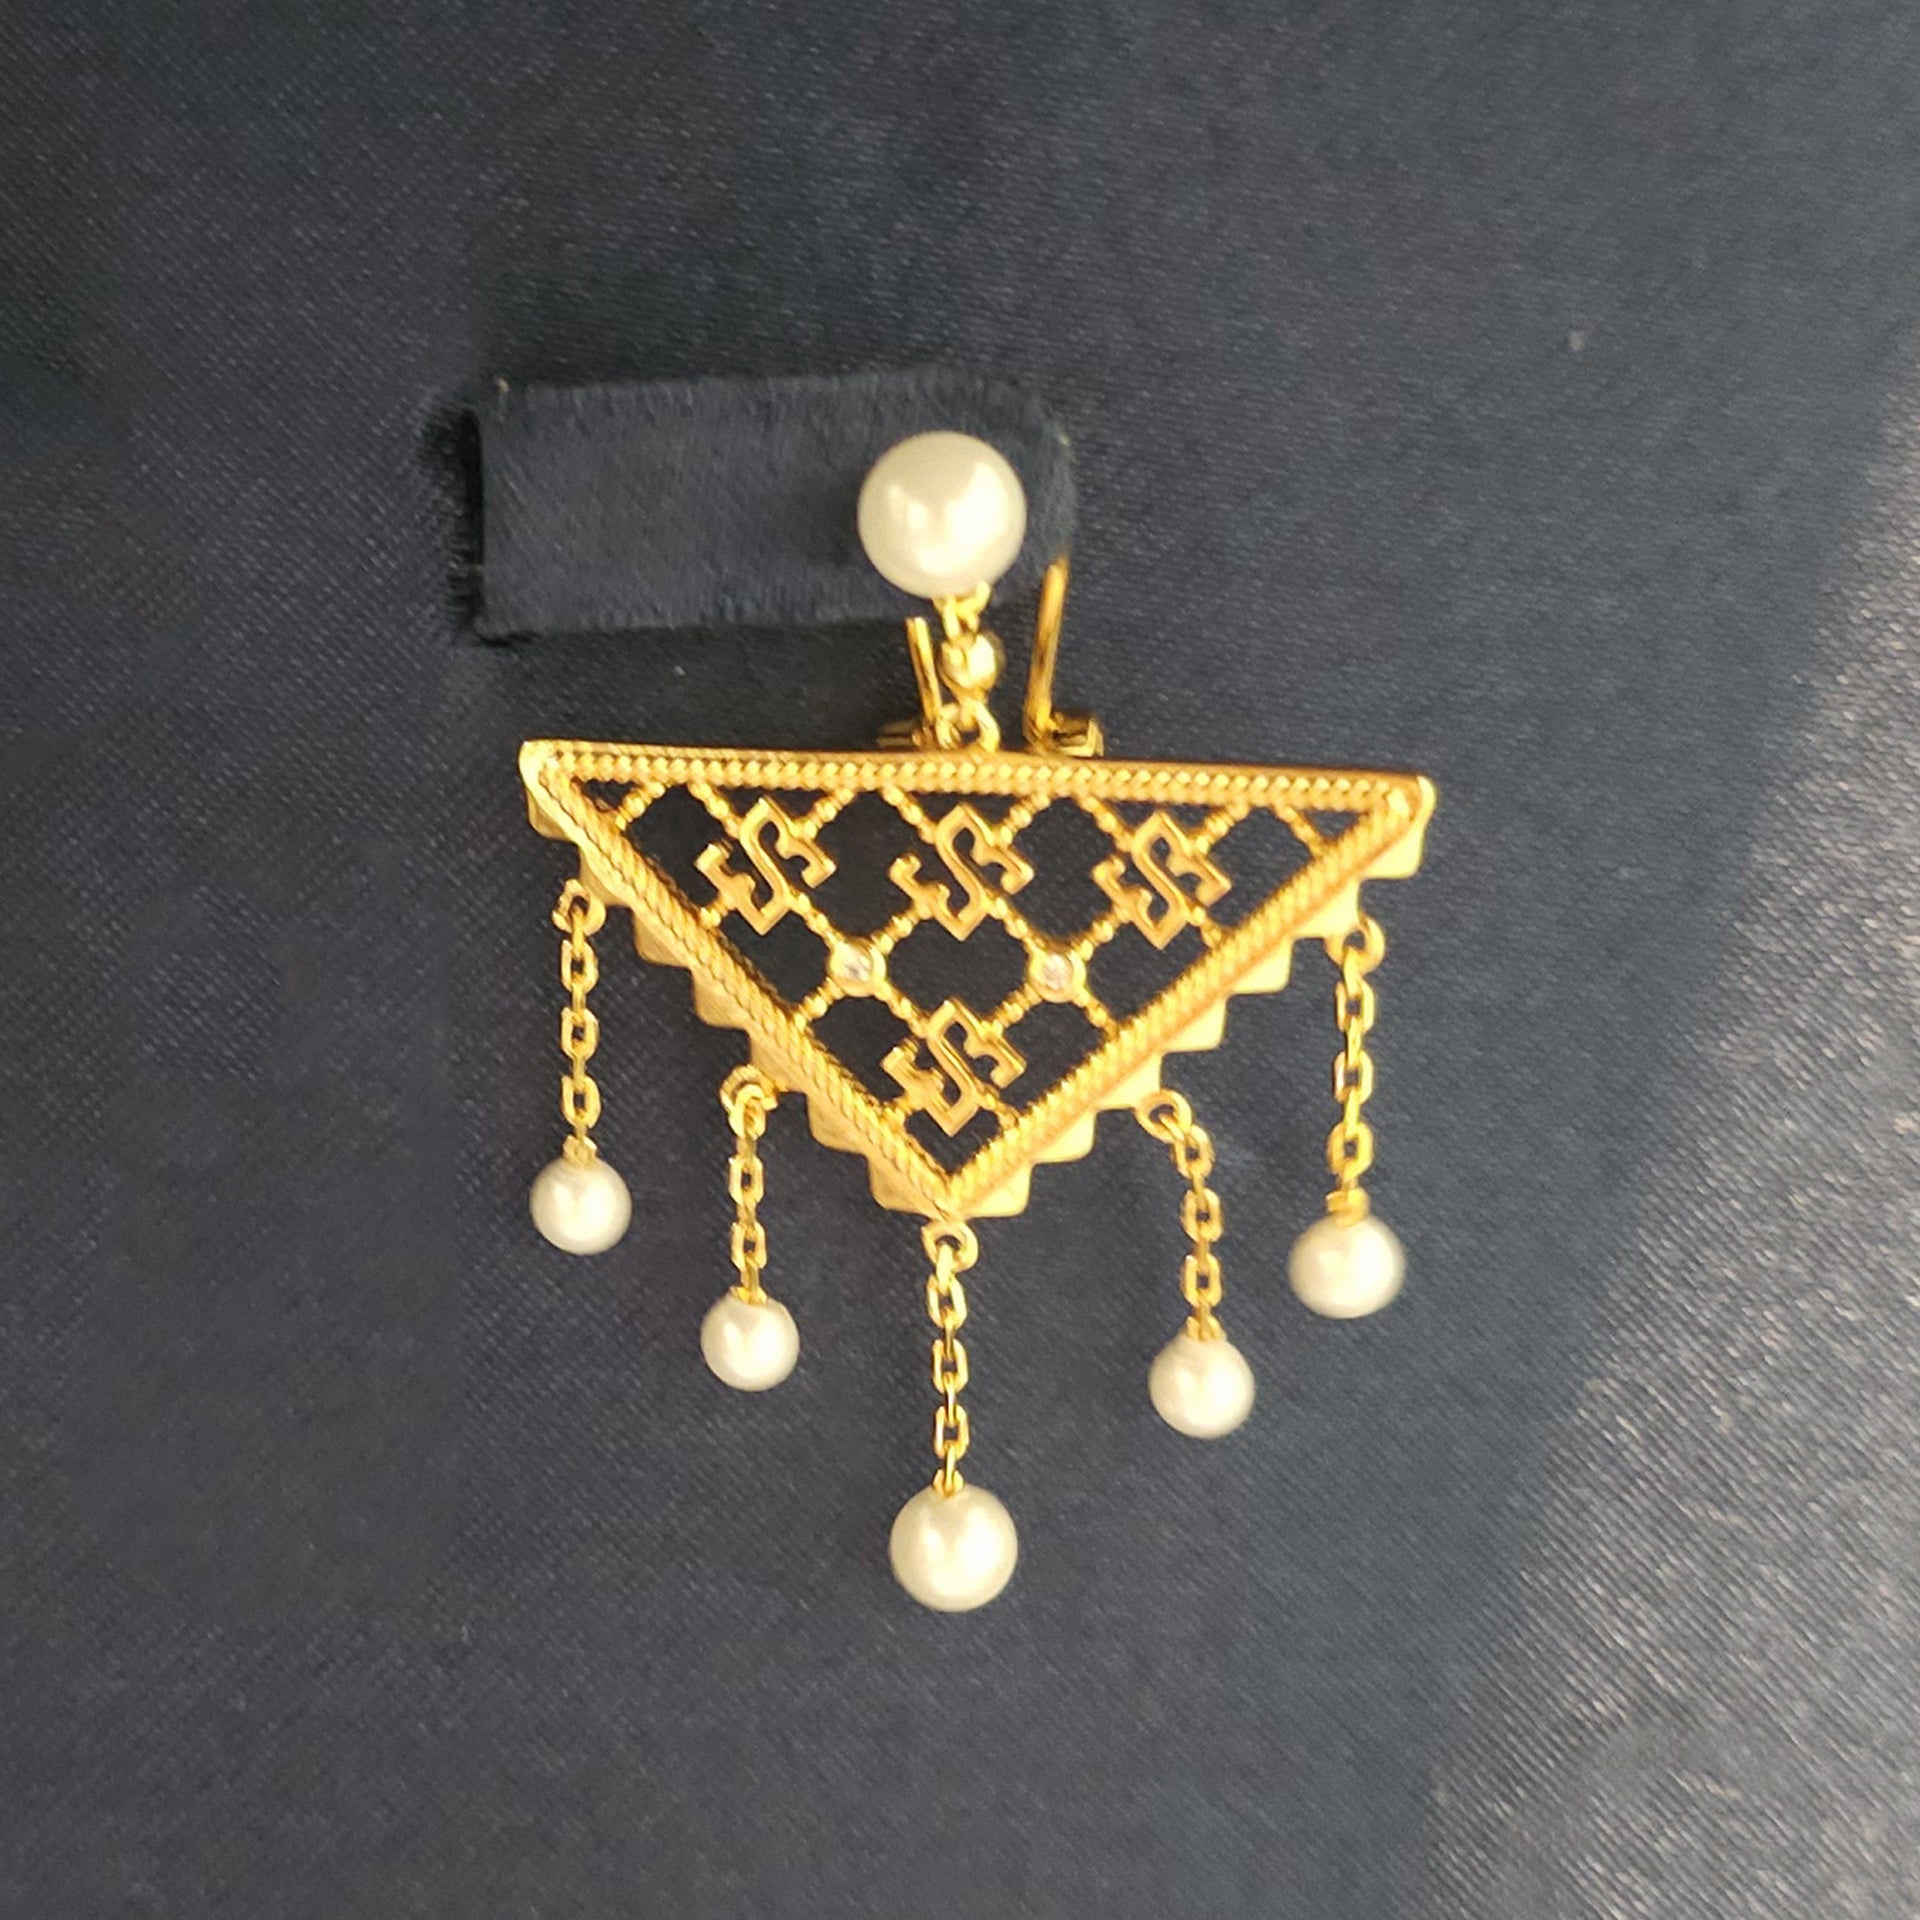 Jadeel Gold Baby Earrings From Le-Soleil